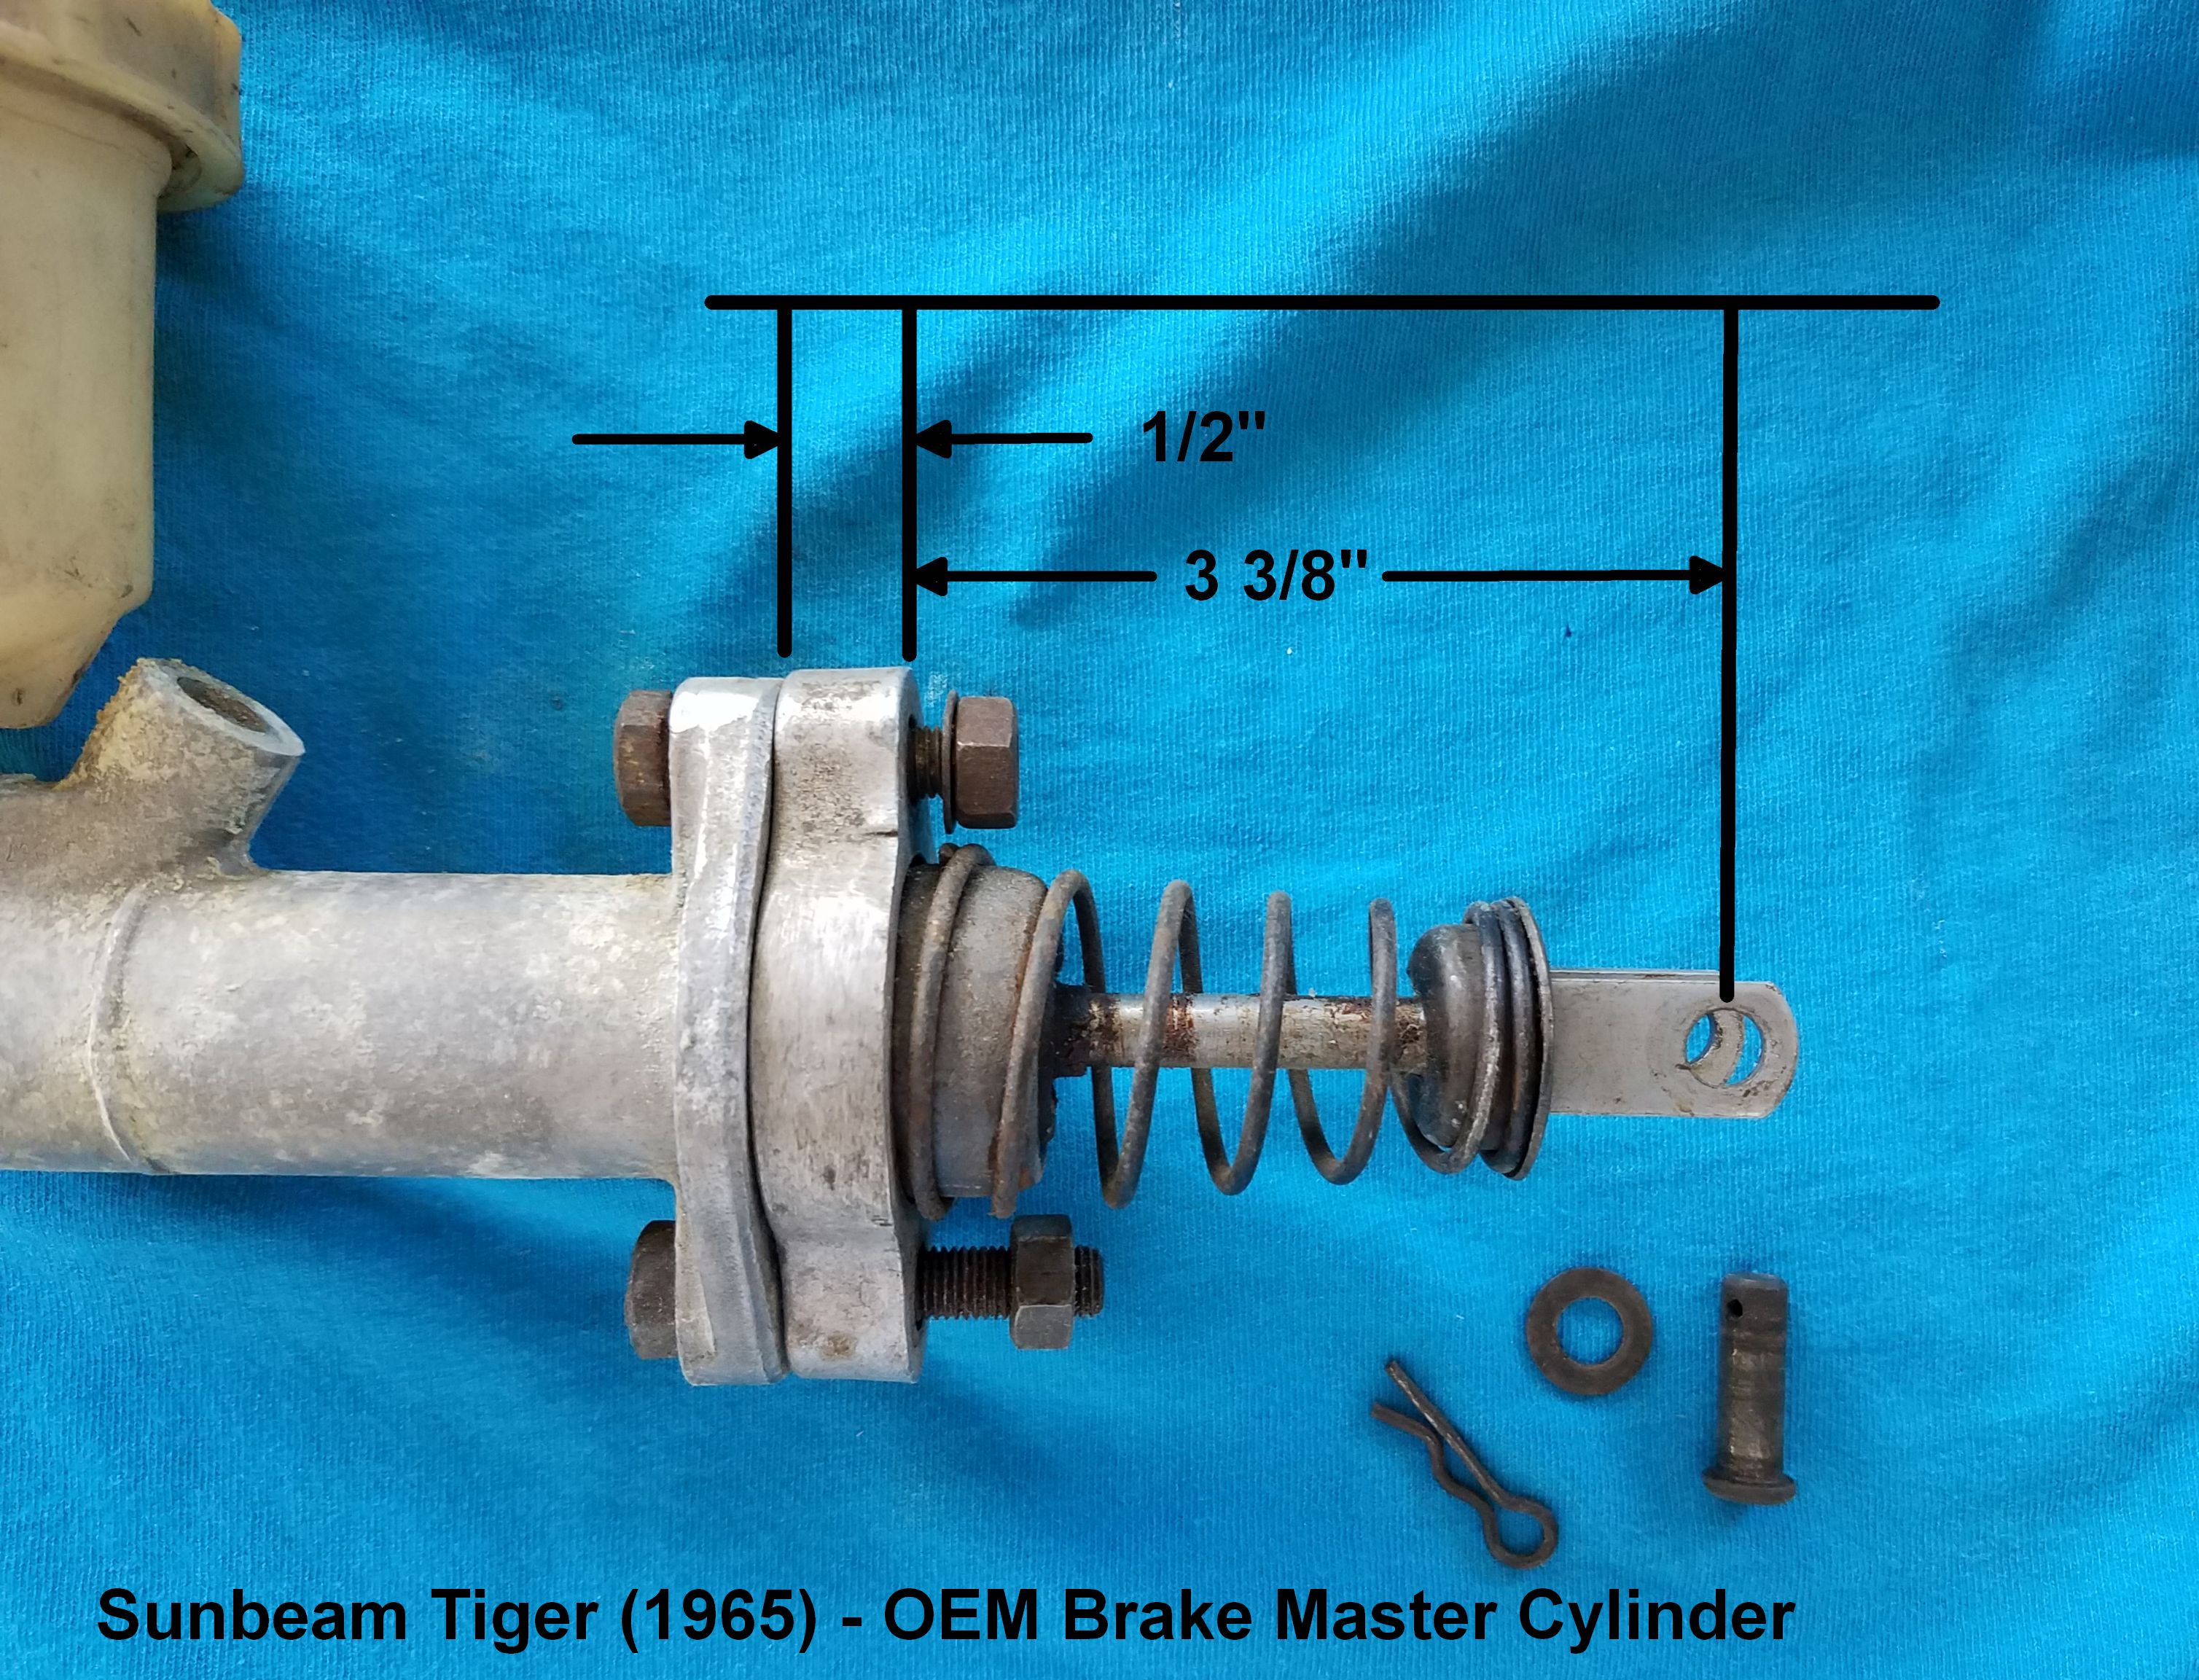 Brake Master Cylinder (2) - (Dimensions).jpg